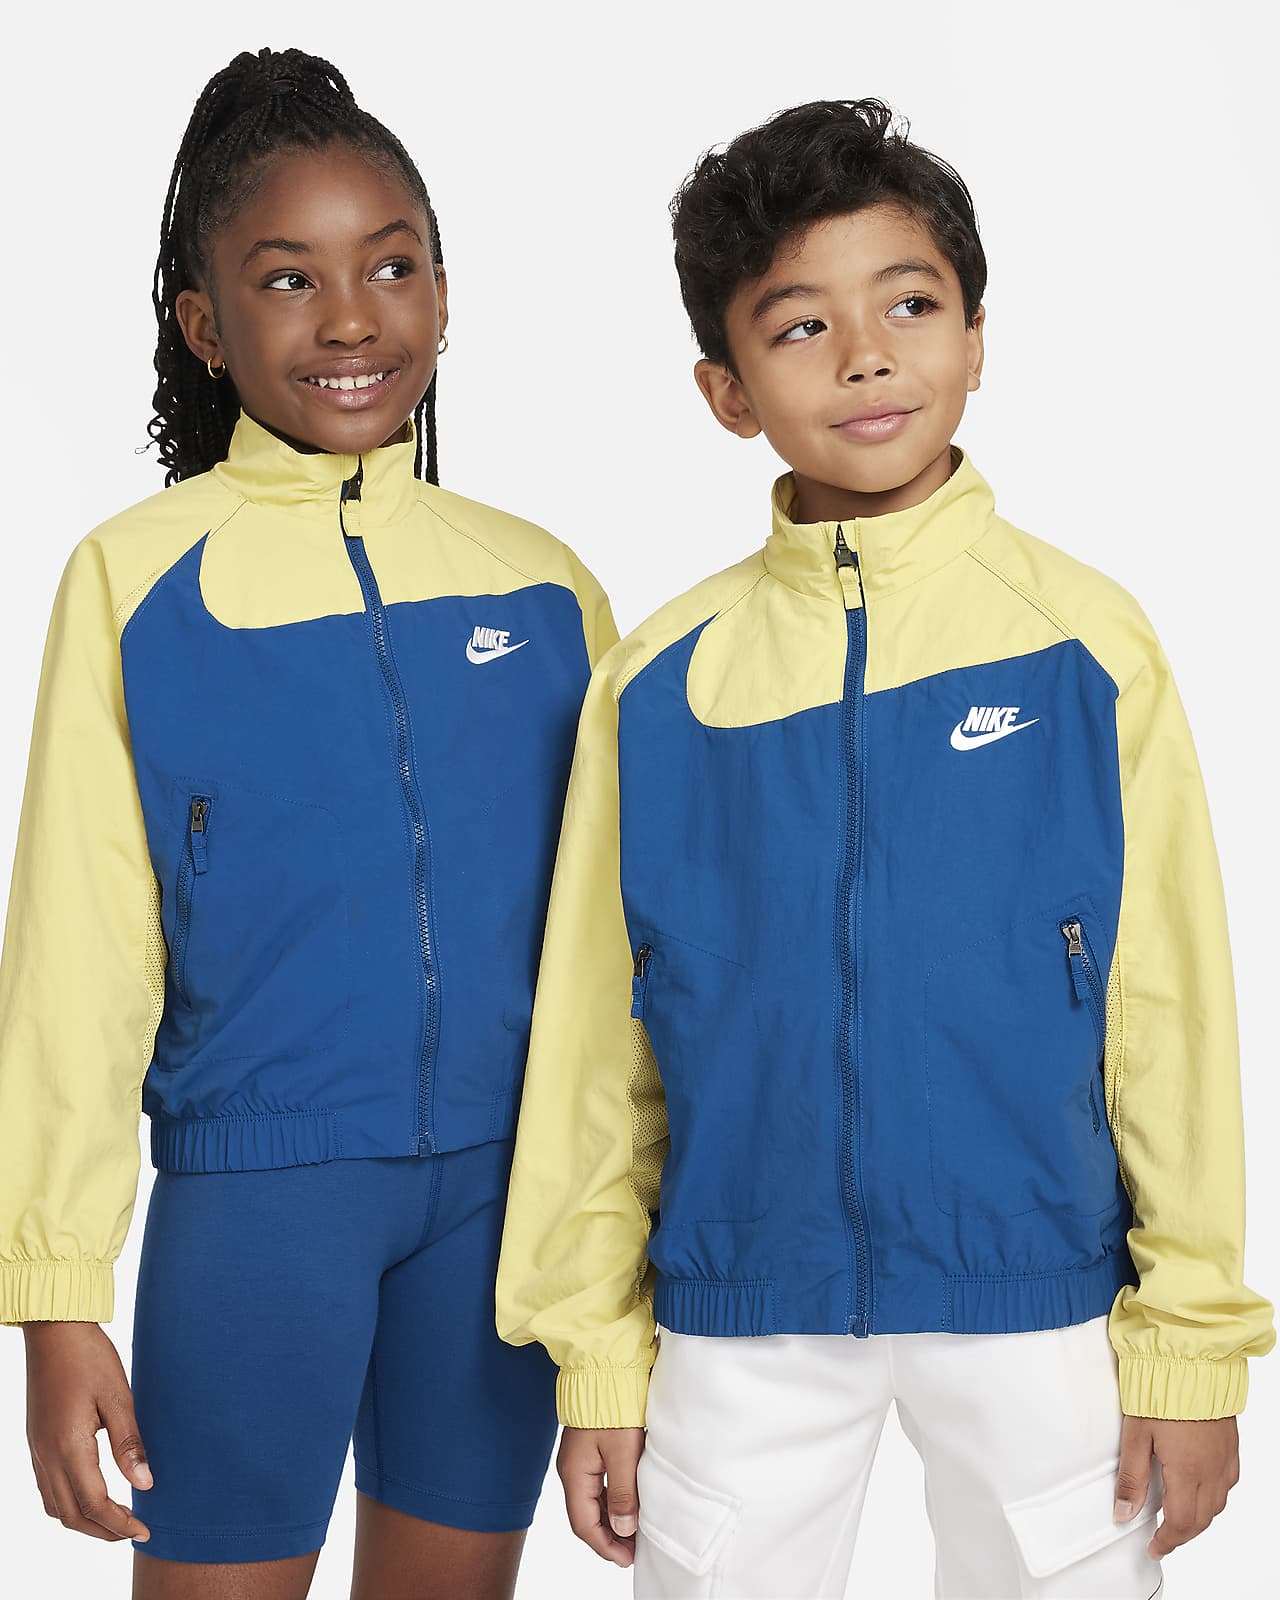 Nike Sportswear Amplify Big Kids' Woven Full-Zip Jacket